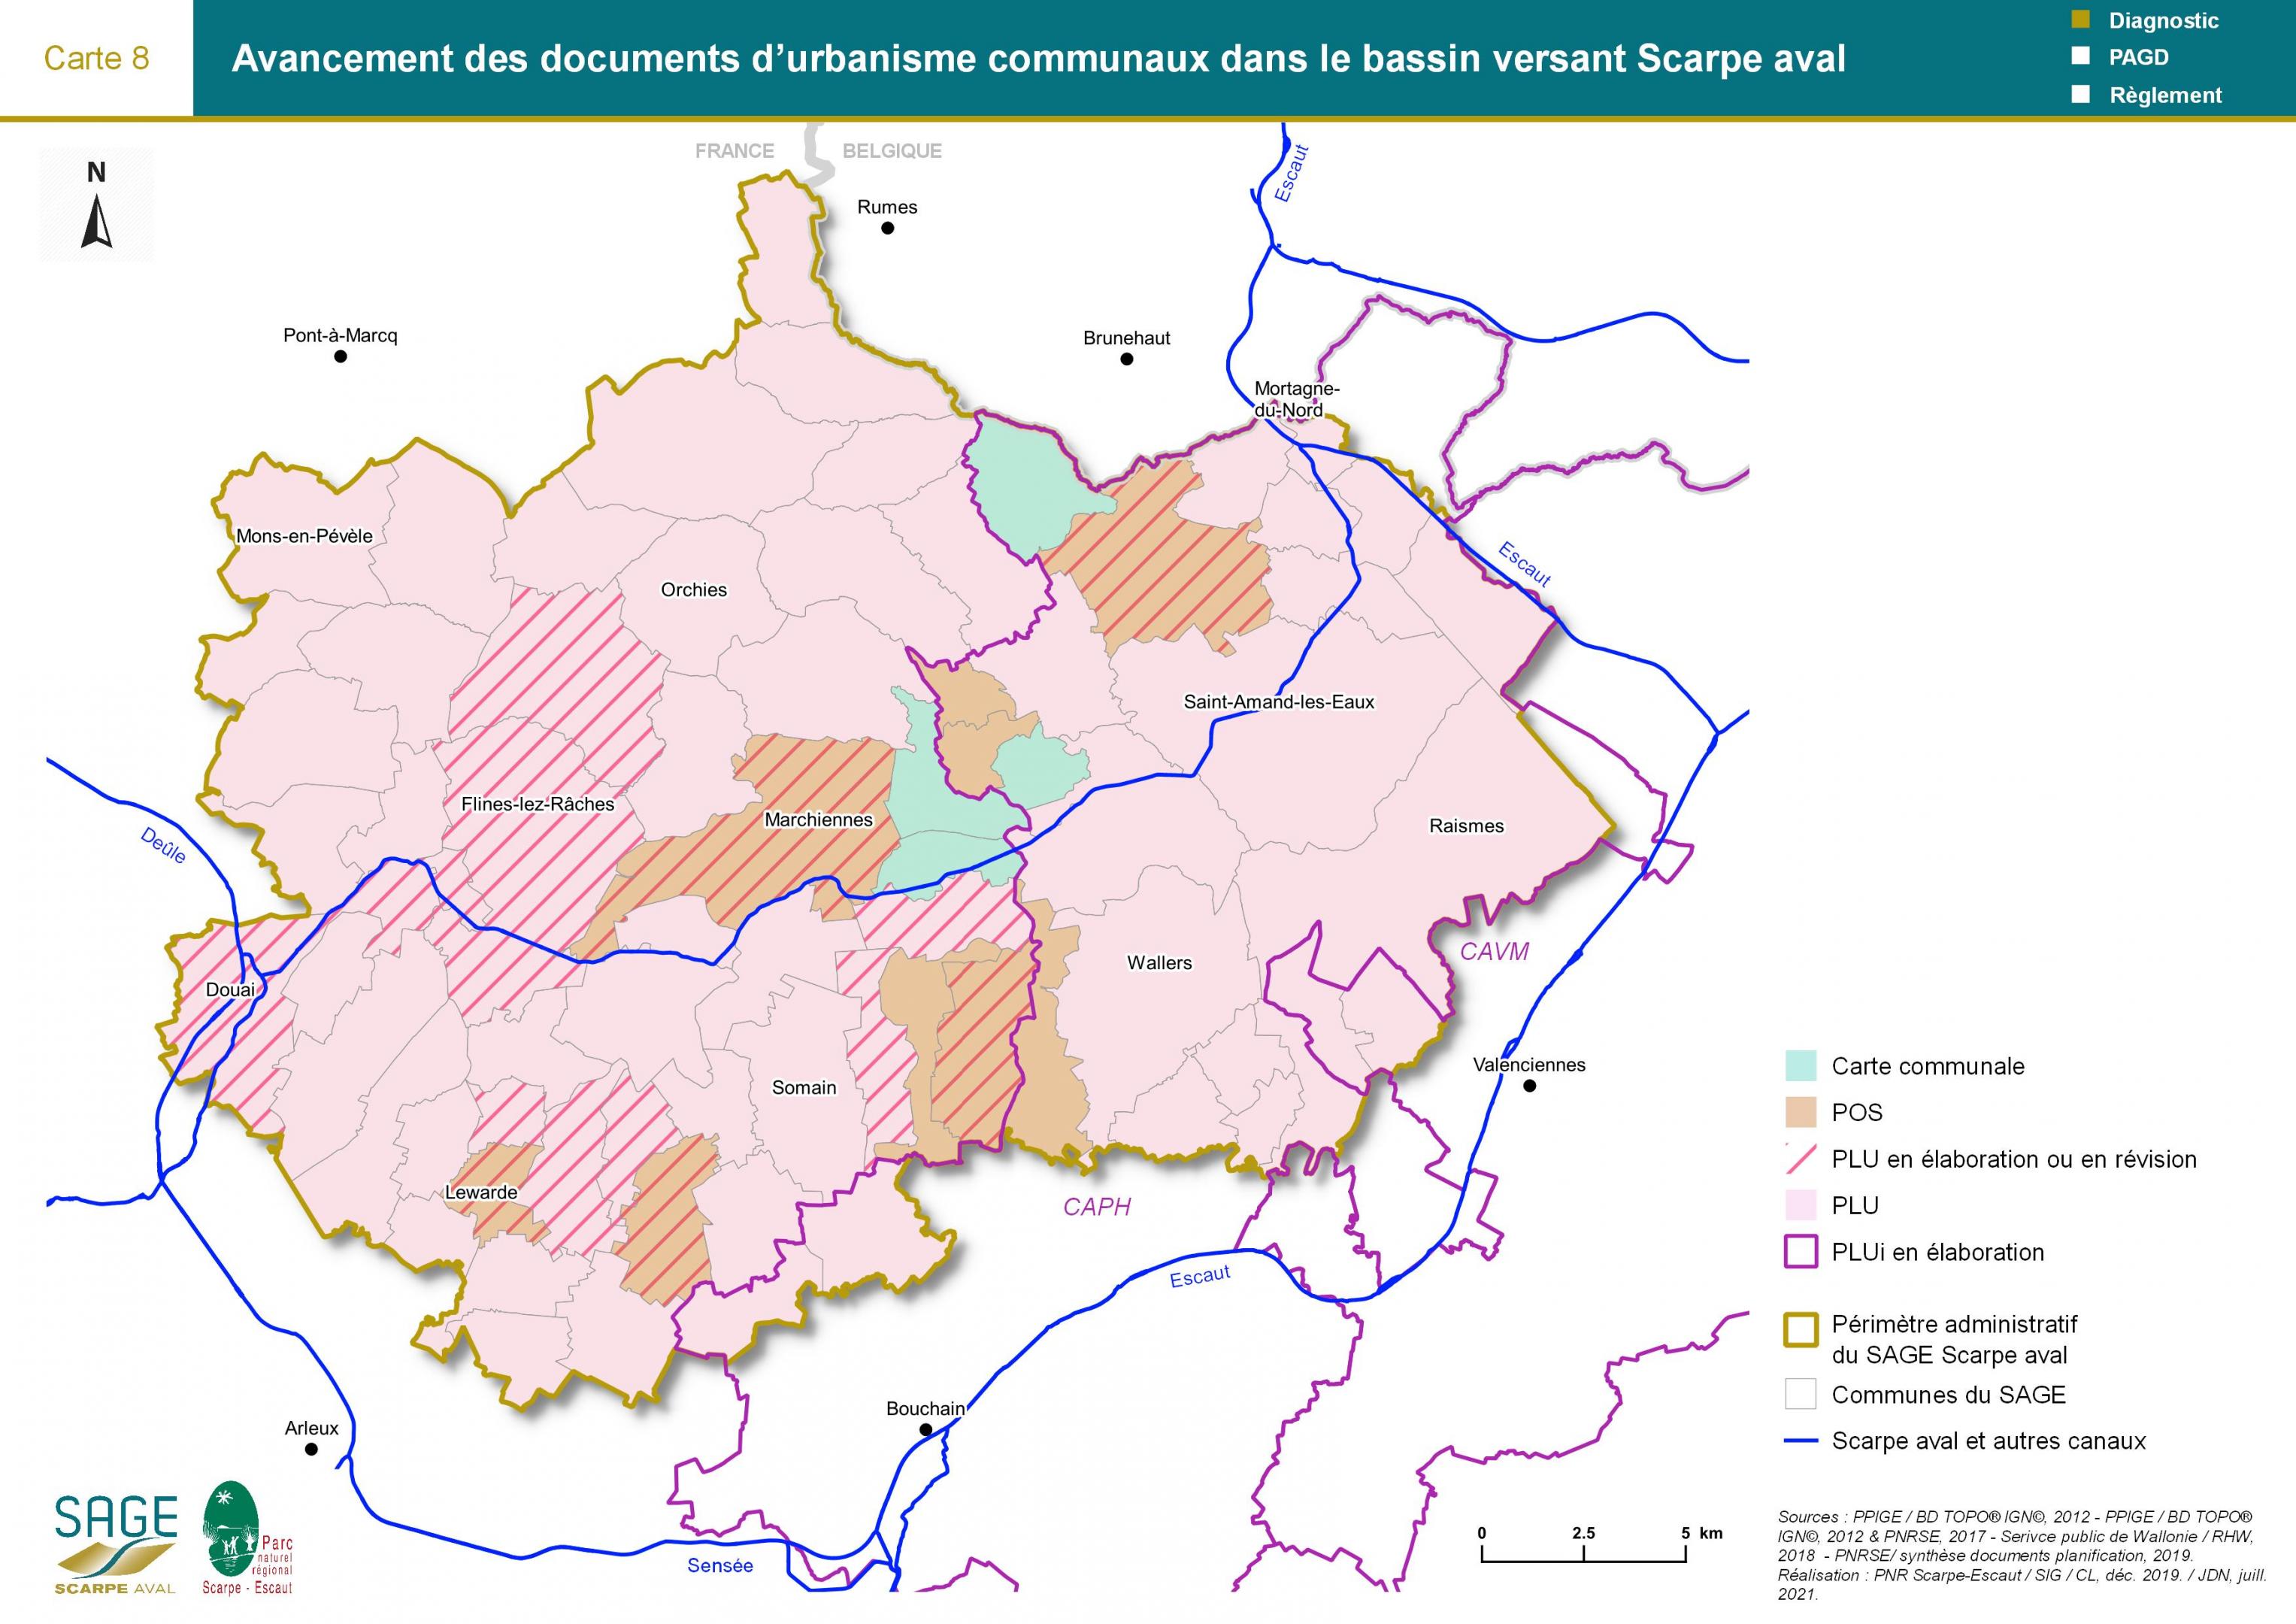 Etat des lieux - Carte 8 : Avancement des documents d’urbanisme communaux dans le bassin Scarpe aval